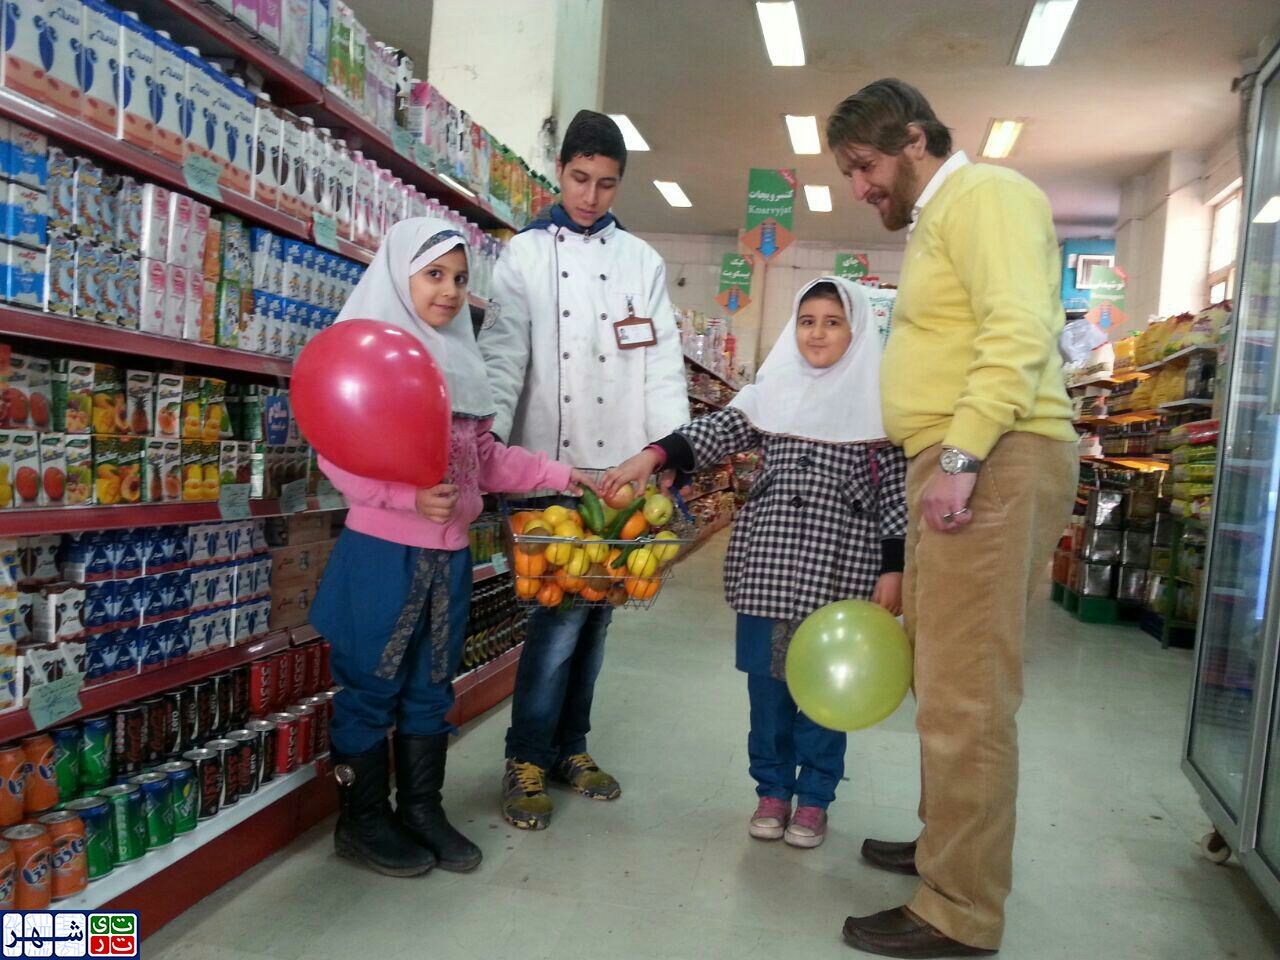 بازارهای میادین میوه و تره بار مشوق کودکان در تغذیه سالم می شوند/ برای نخستین بار در بازارهای میوه و تره بار تهران میوه رایگان به کودکان عرضه می شود!